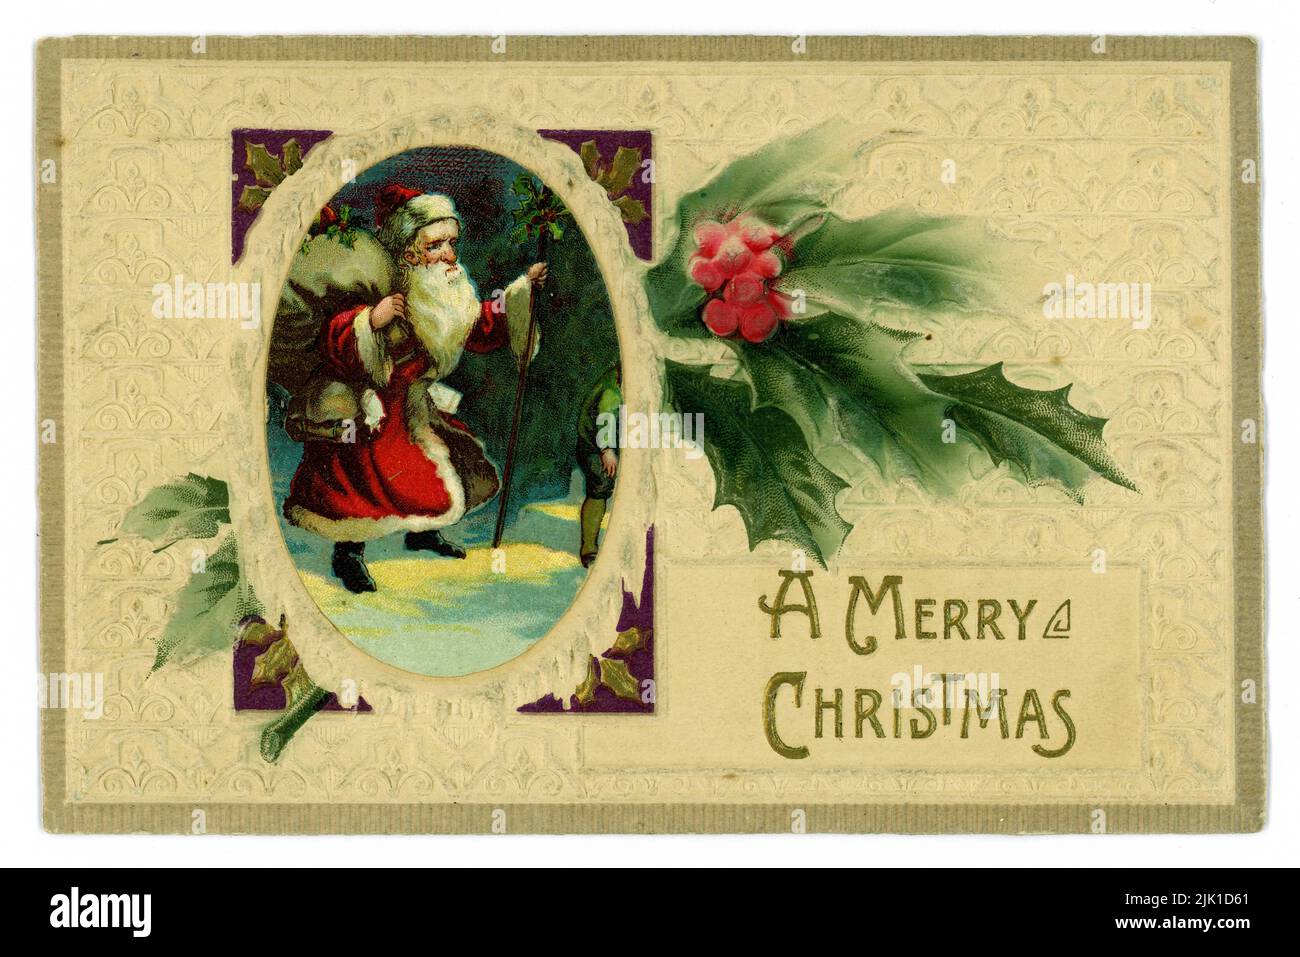 Originale Edwardian carta di Natale in rilievo, illustrato con il Natale del Padre che cammina attraverso la neve portando un sacco di giocattoli, rametto di agrifoglio, che desidera 'Un buon Natale' Regno Unito circa 1905, 1910 Foto Stock